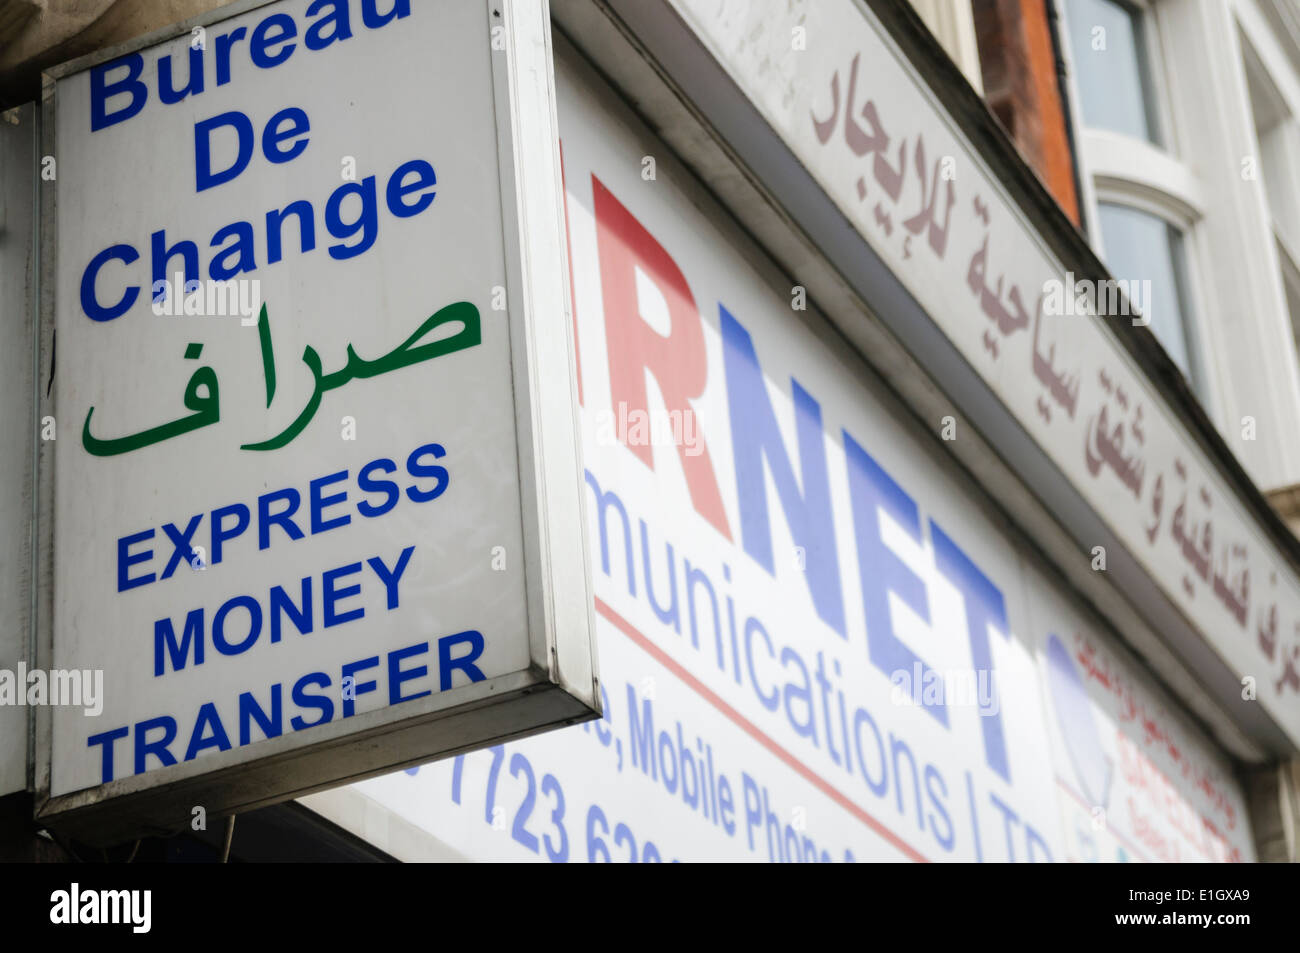 Bureau de Change, esprimere il trasferimento di denaro, in arabo Foto Stock